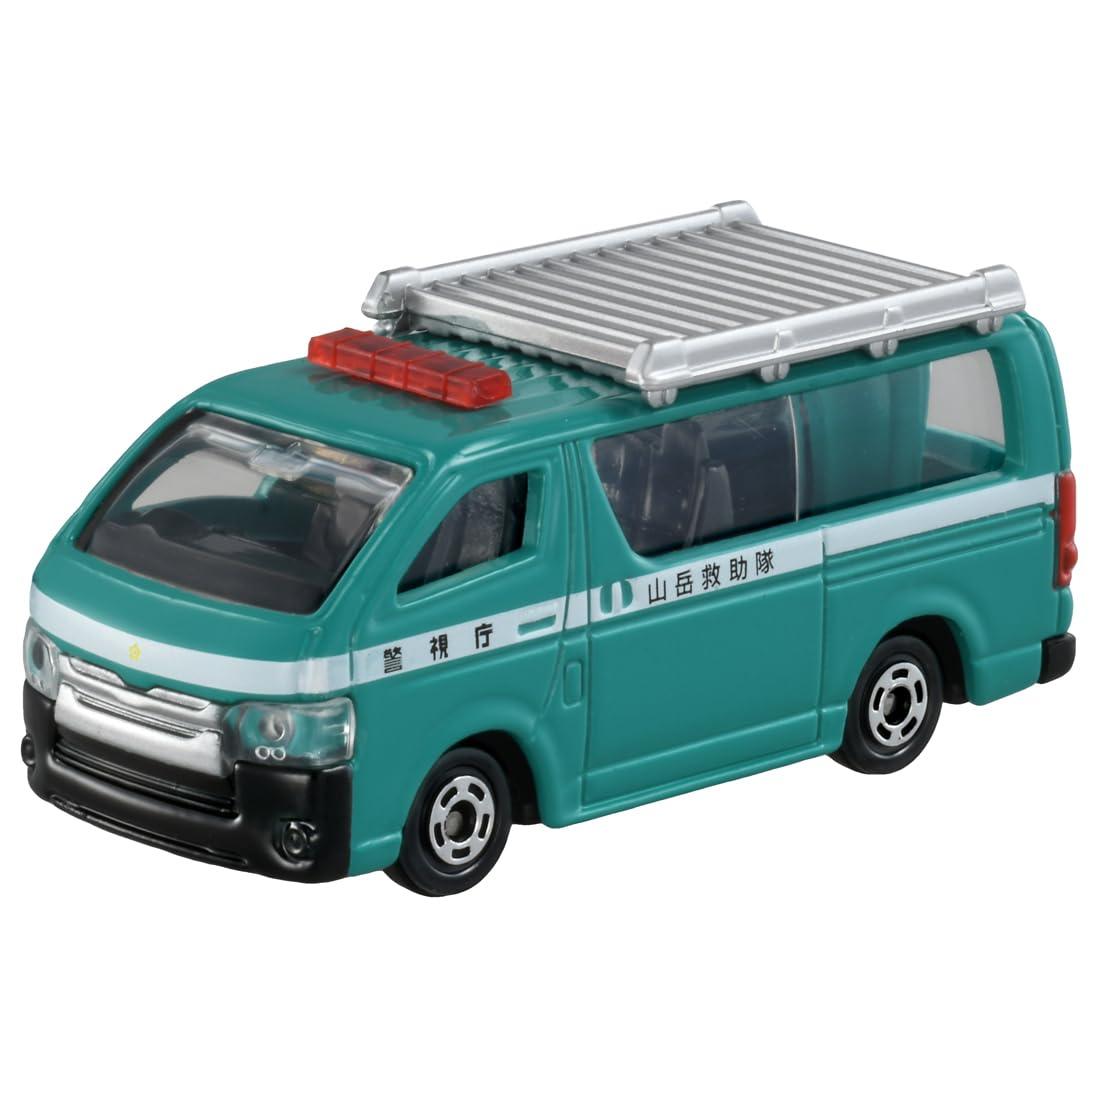 タカラトミー トミカ No.89 山岳救助車 (箱) ミニカー おもちゃ 3歳以上